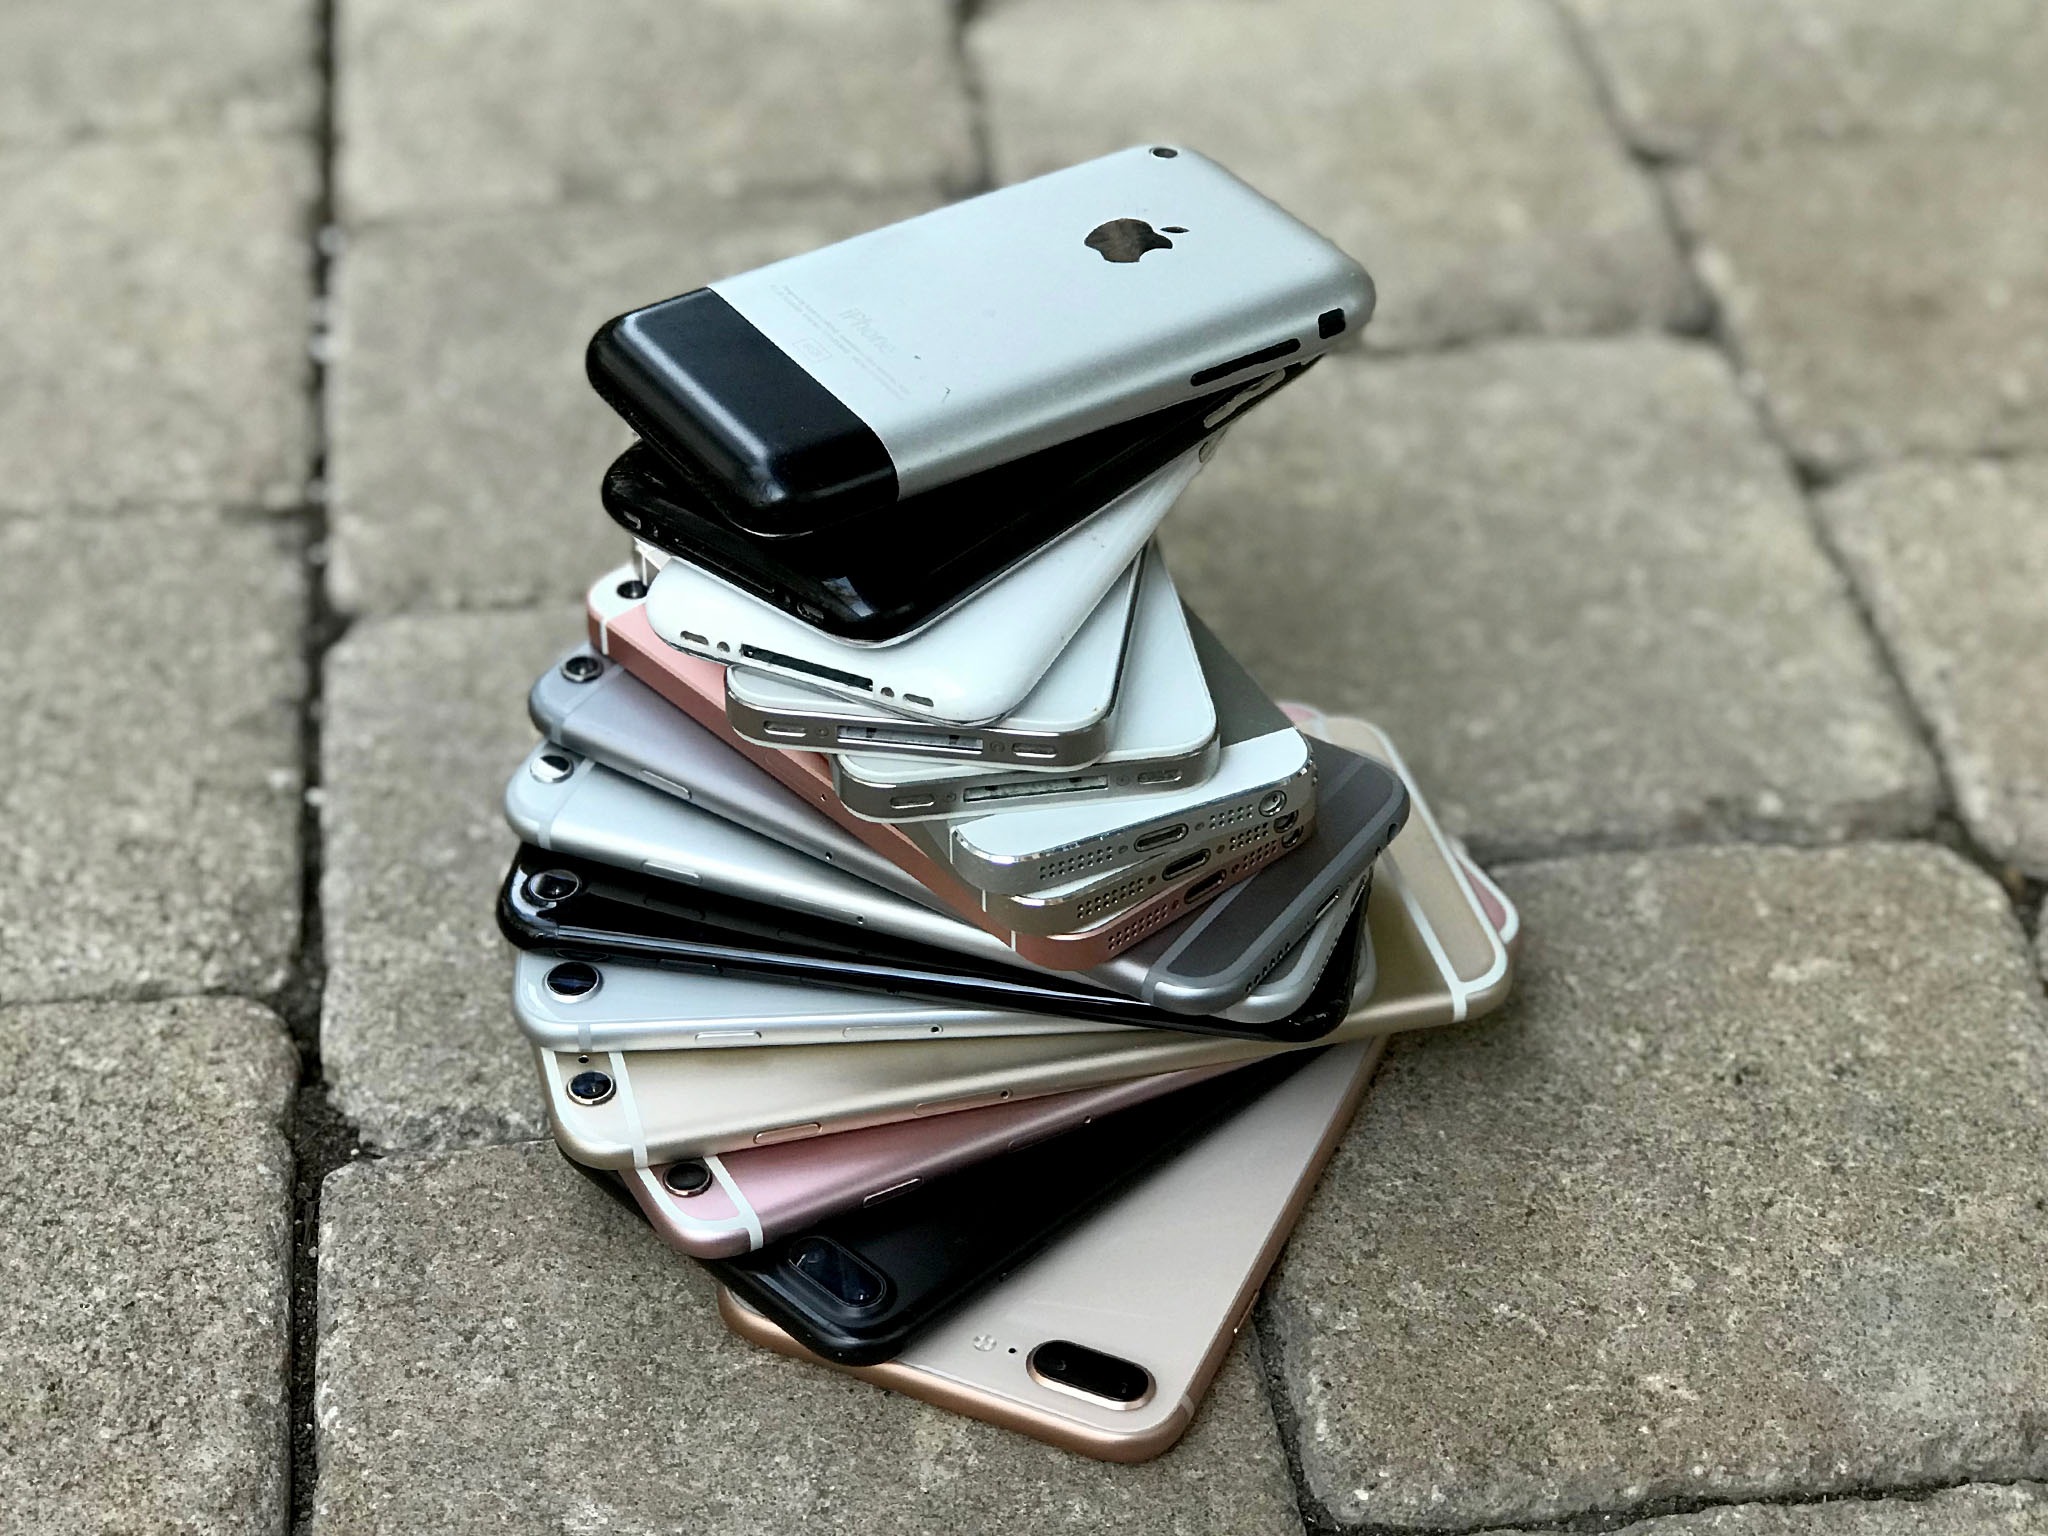 Stack of iPhones